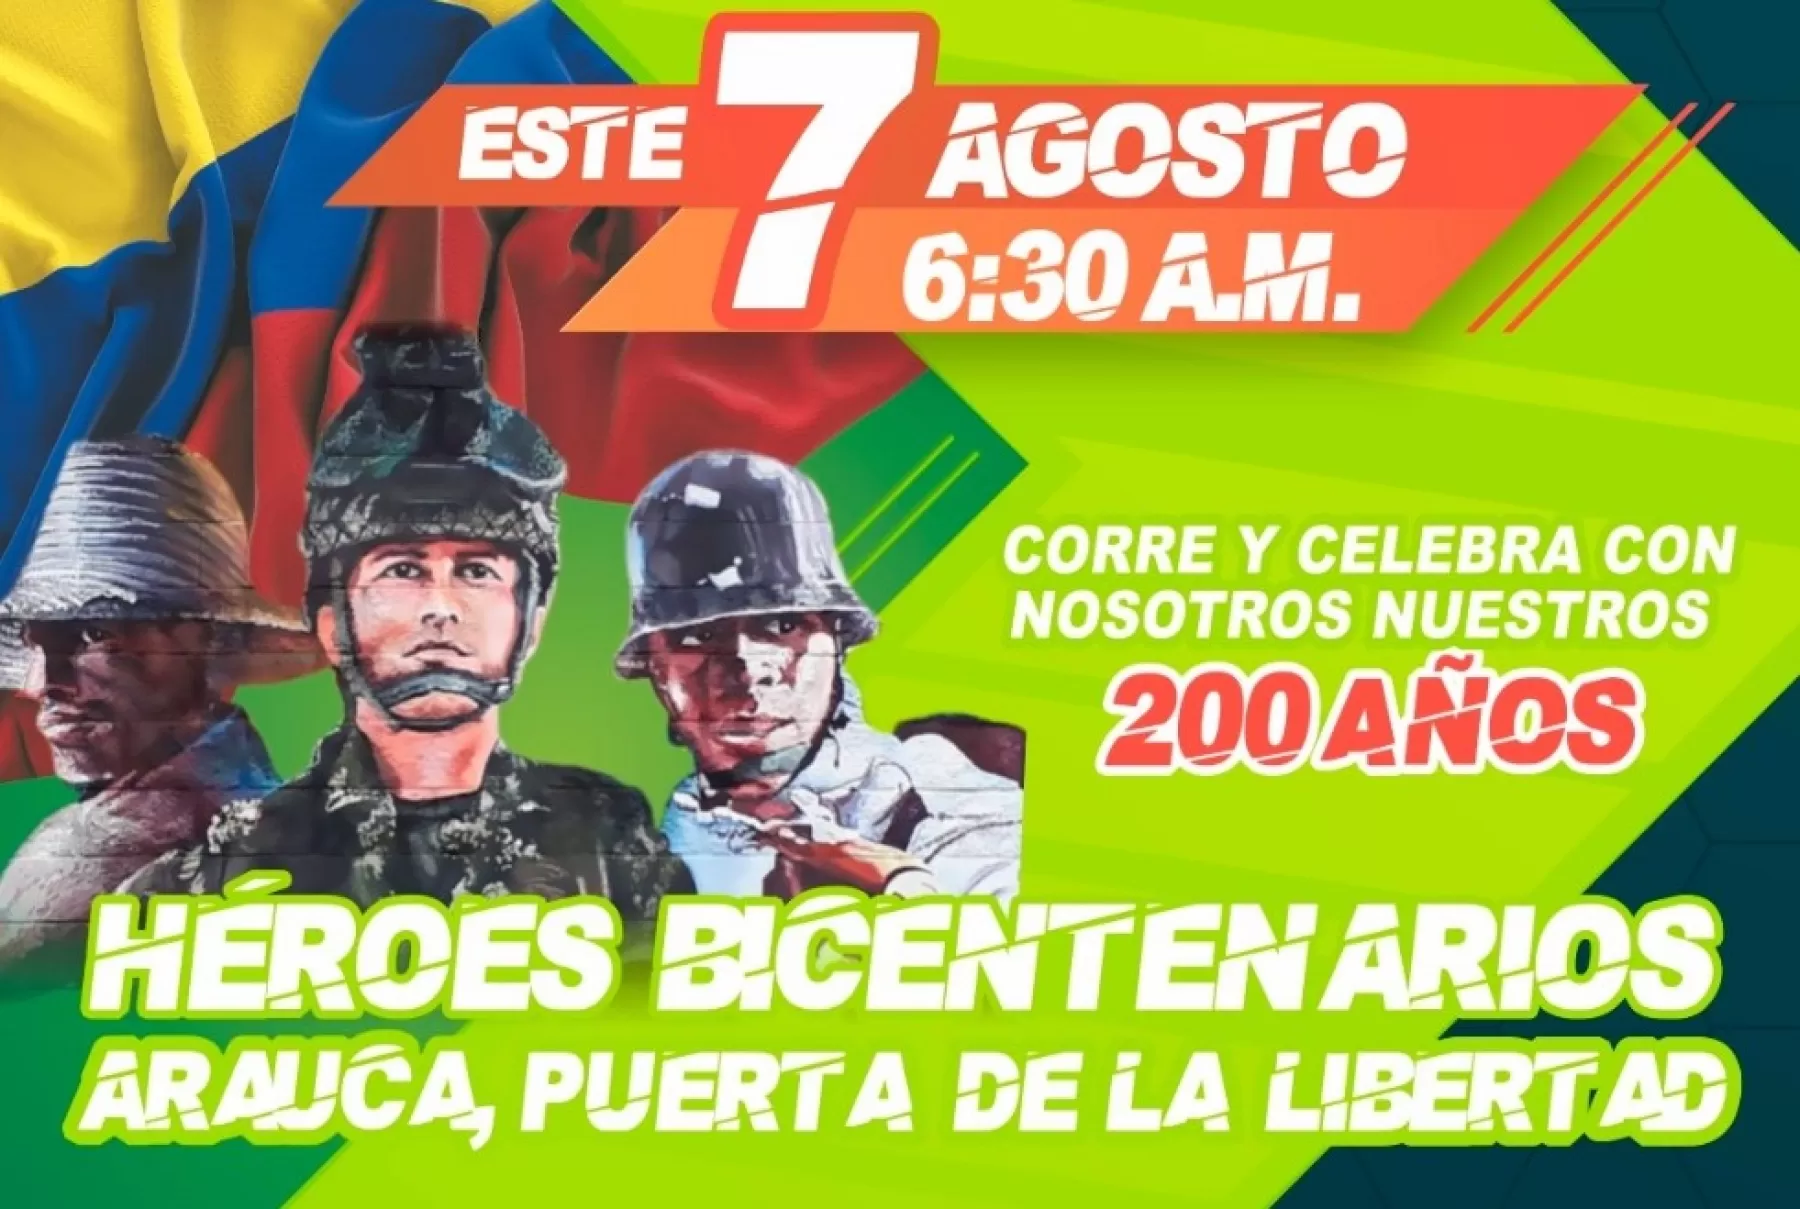 Carrera atlética 7k Héroes Bicentenarios este miércoles 7 de agosto en Arauca